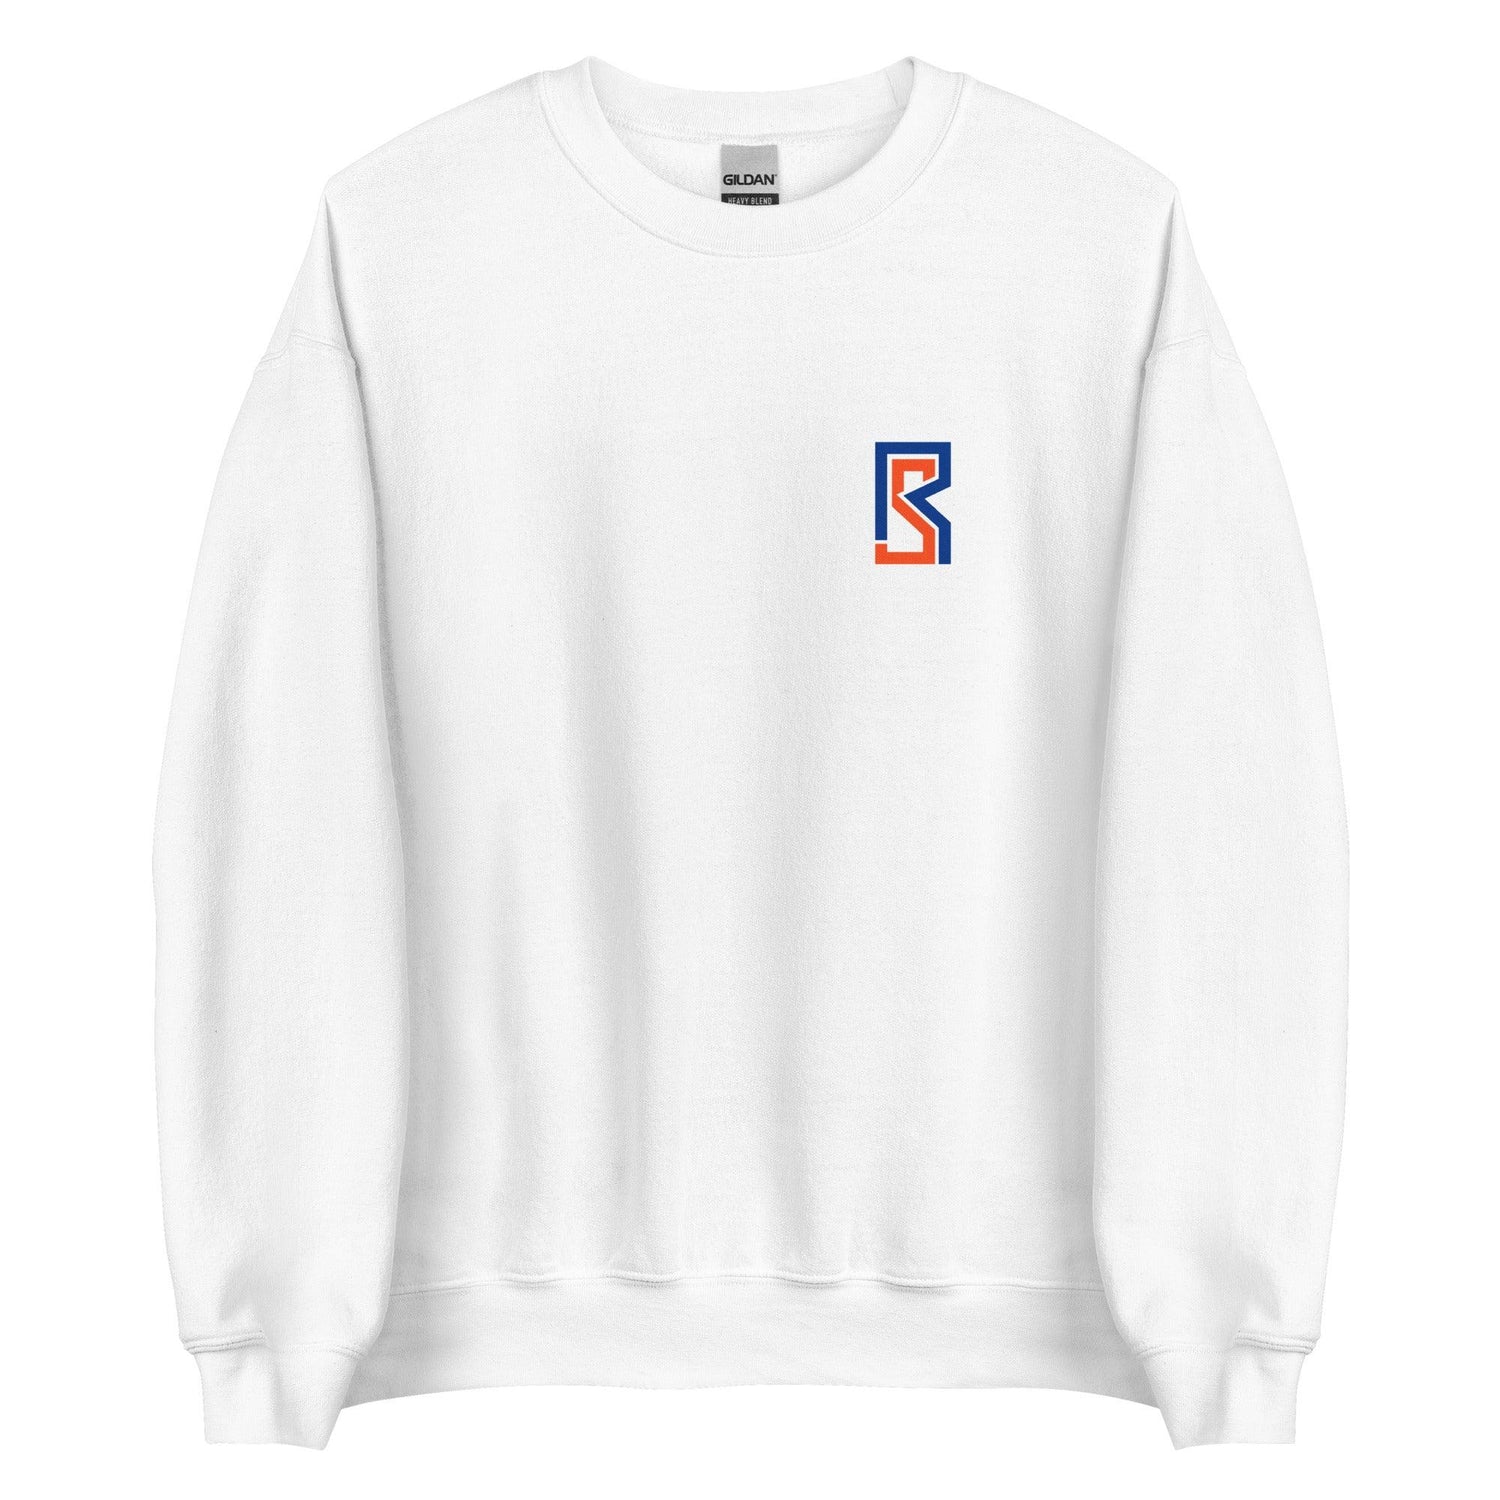 Ryan Slater "Essential" Sweatshirt - Fan Arch